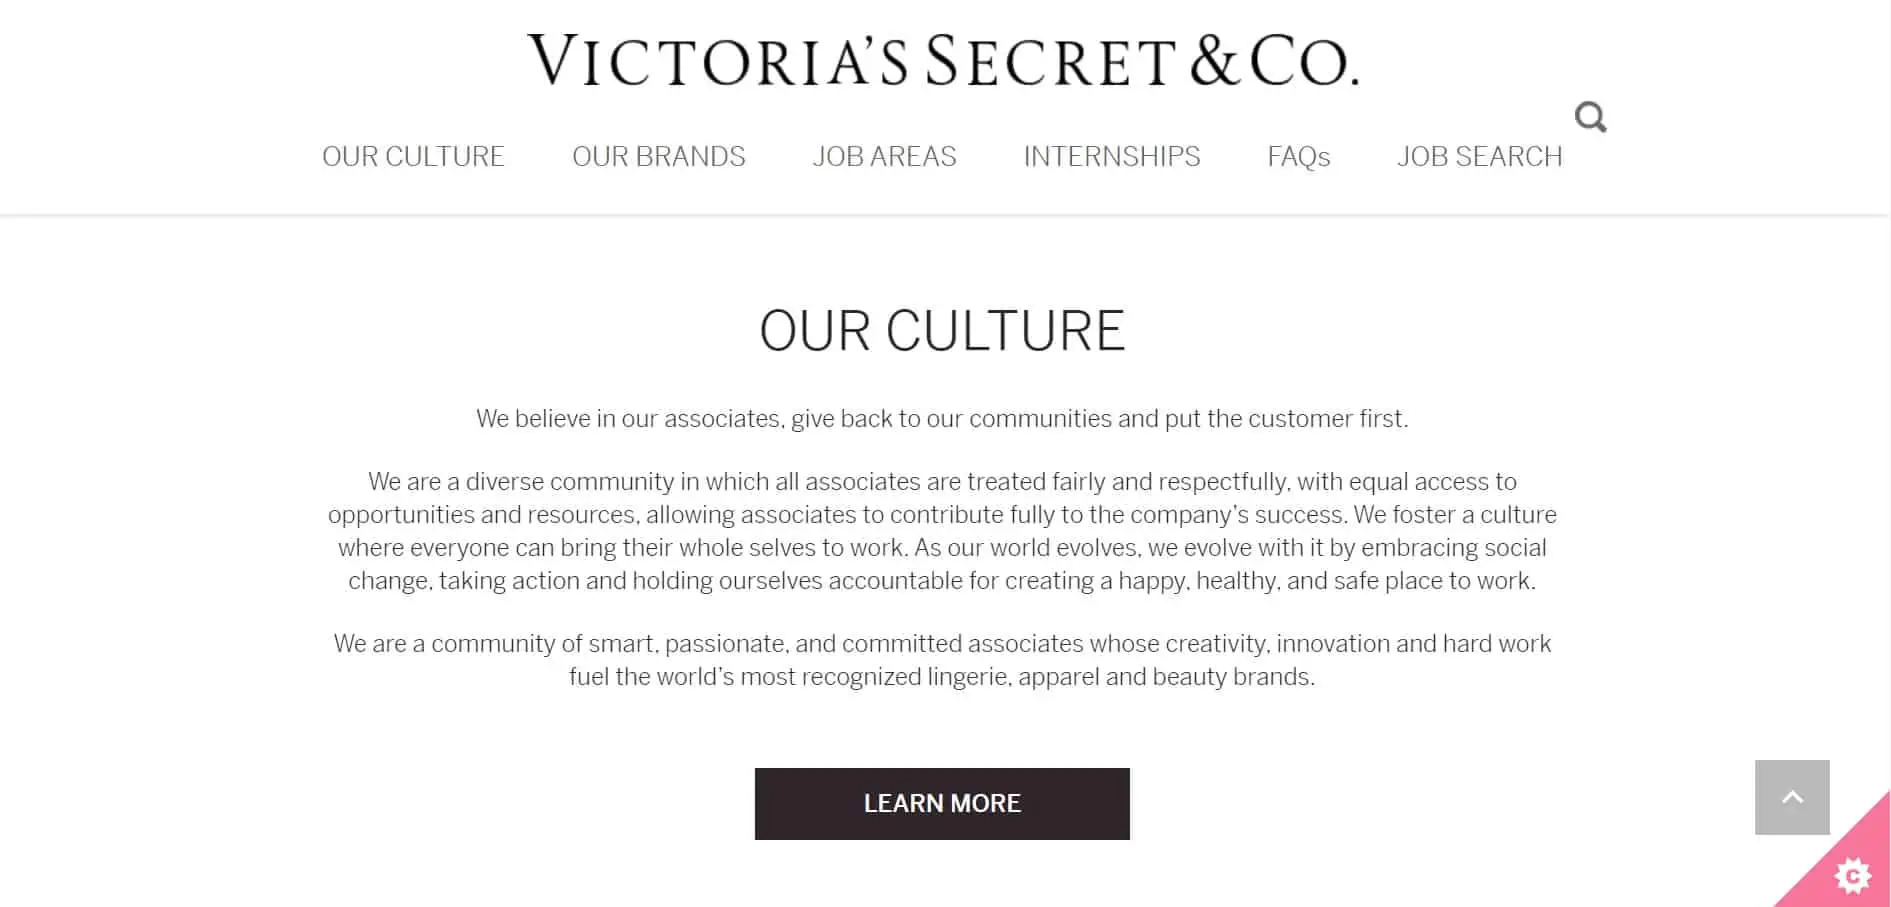 What are the Victoria's Secret core values?